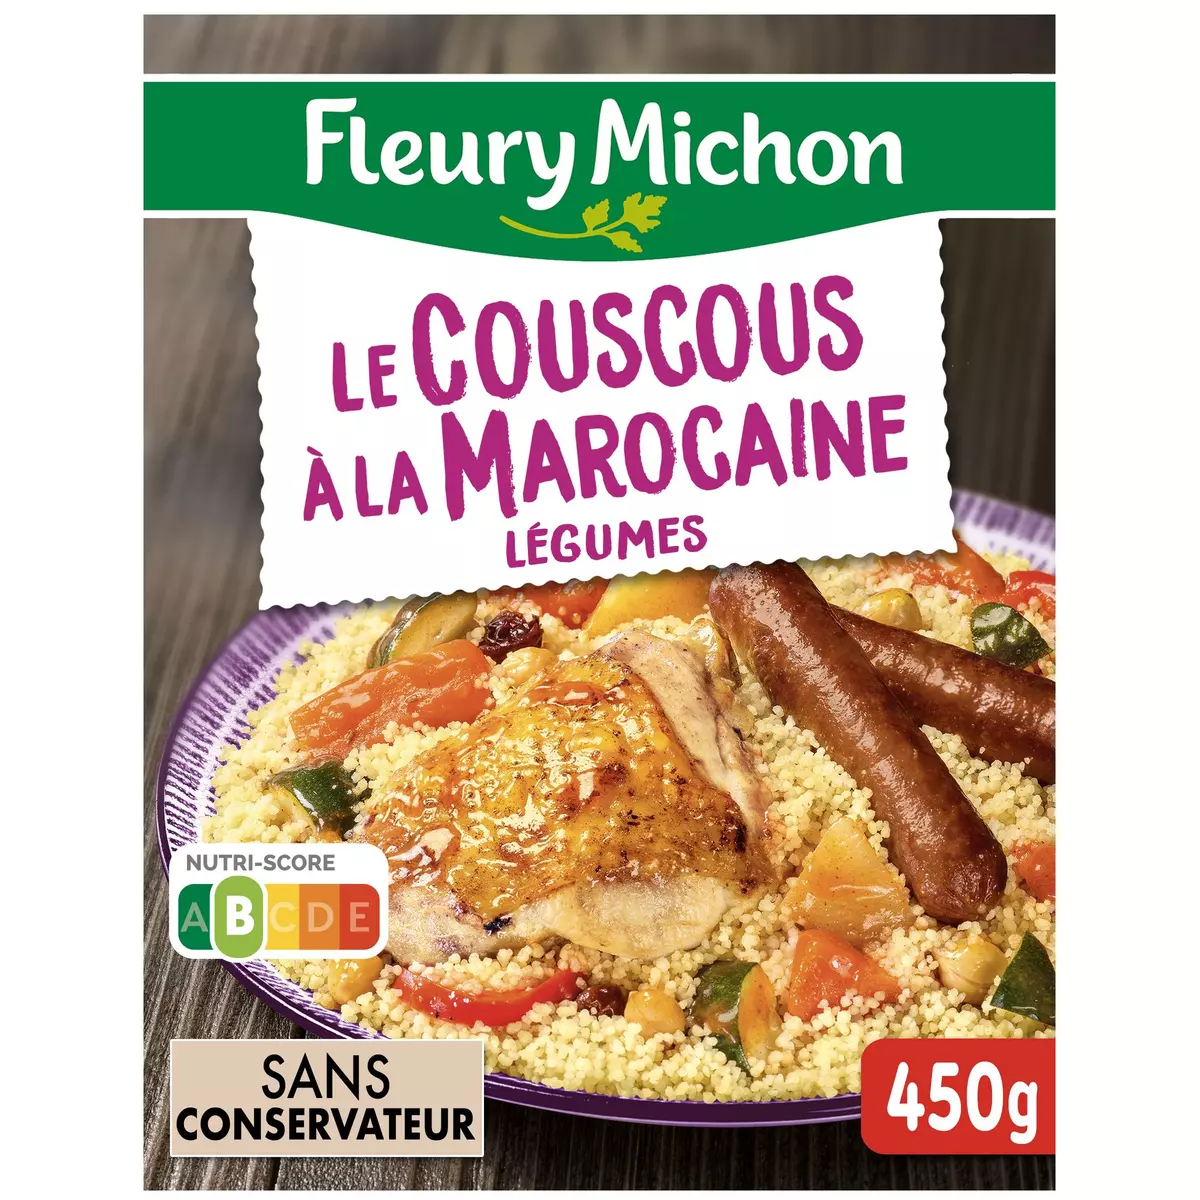 FLEURY MICHON Couscous à la marocaine 1 portion 450g